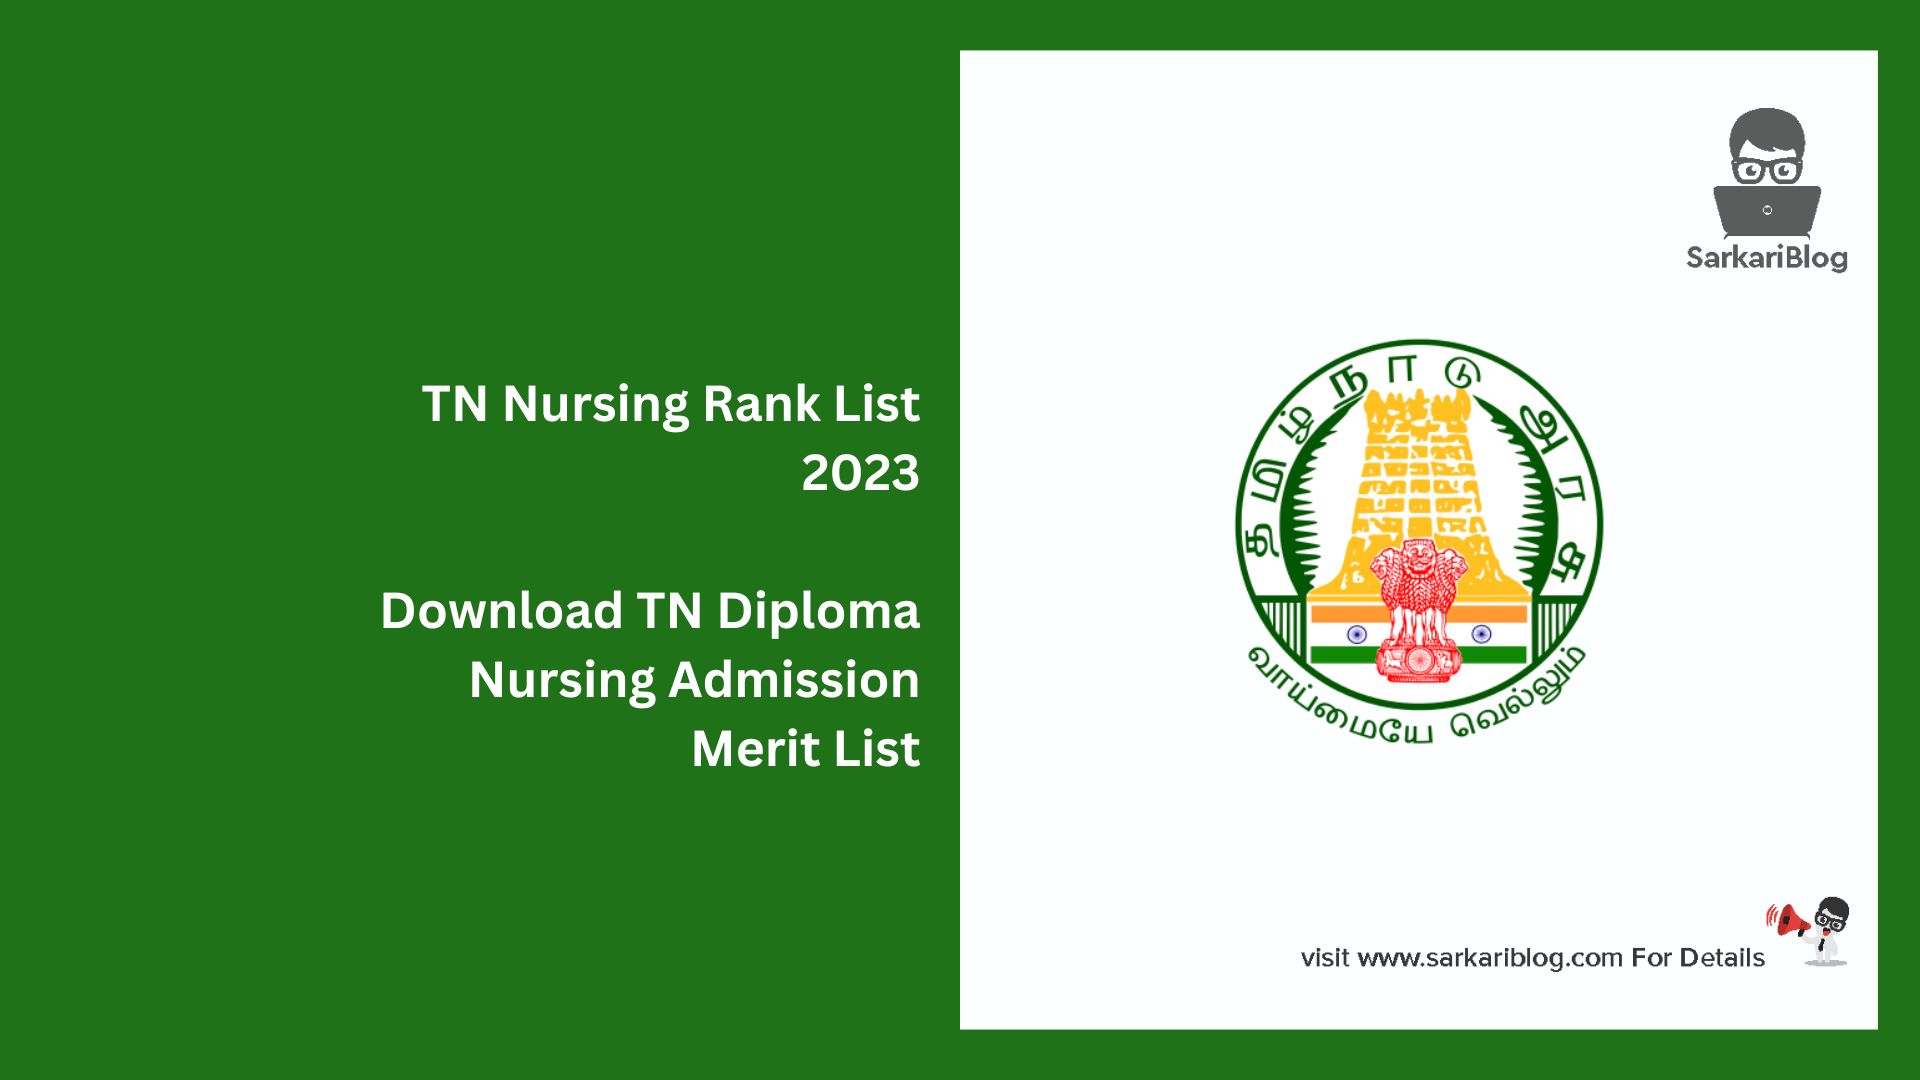 TN Nursing Rank List 2023